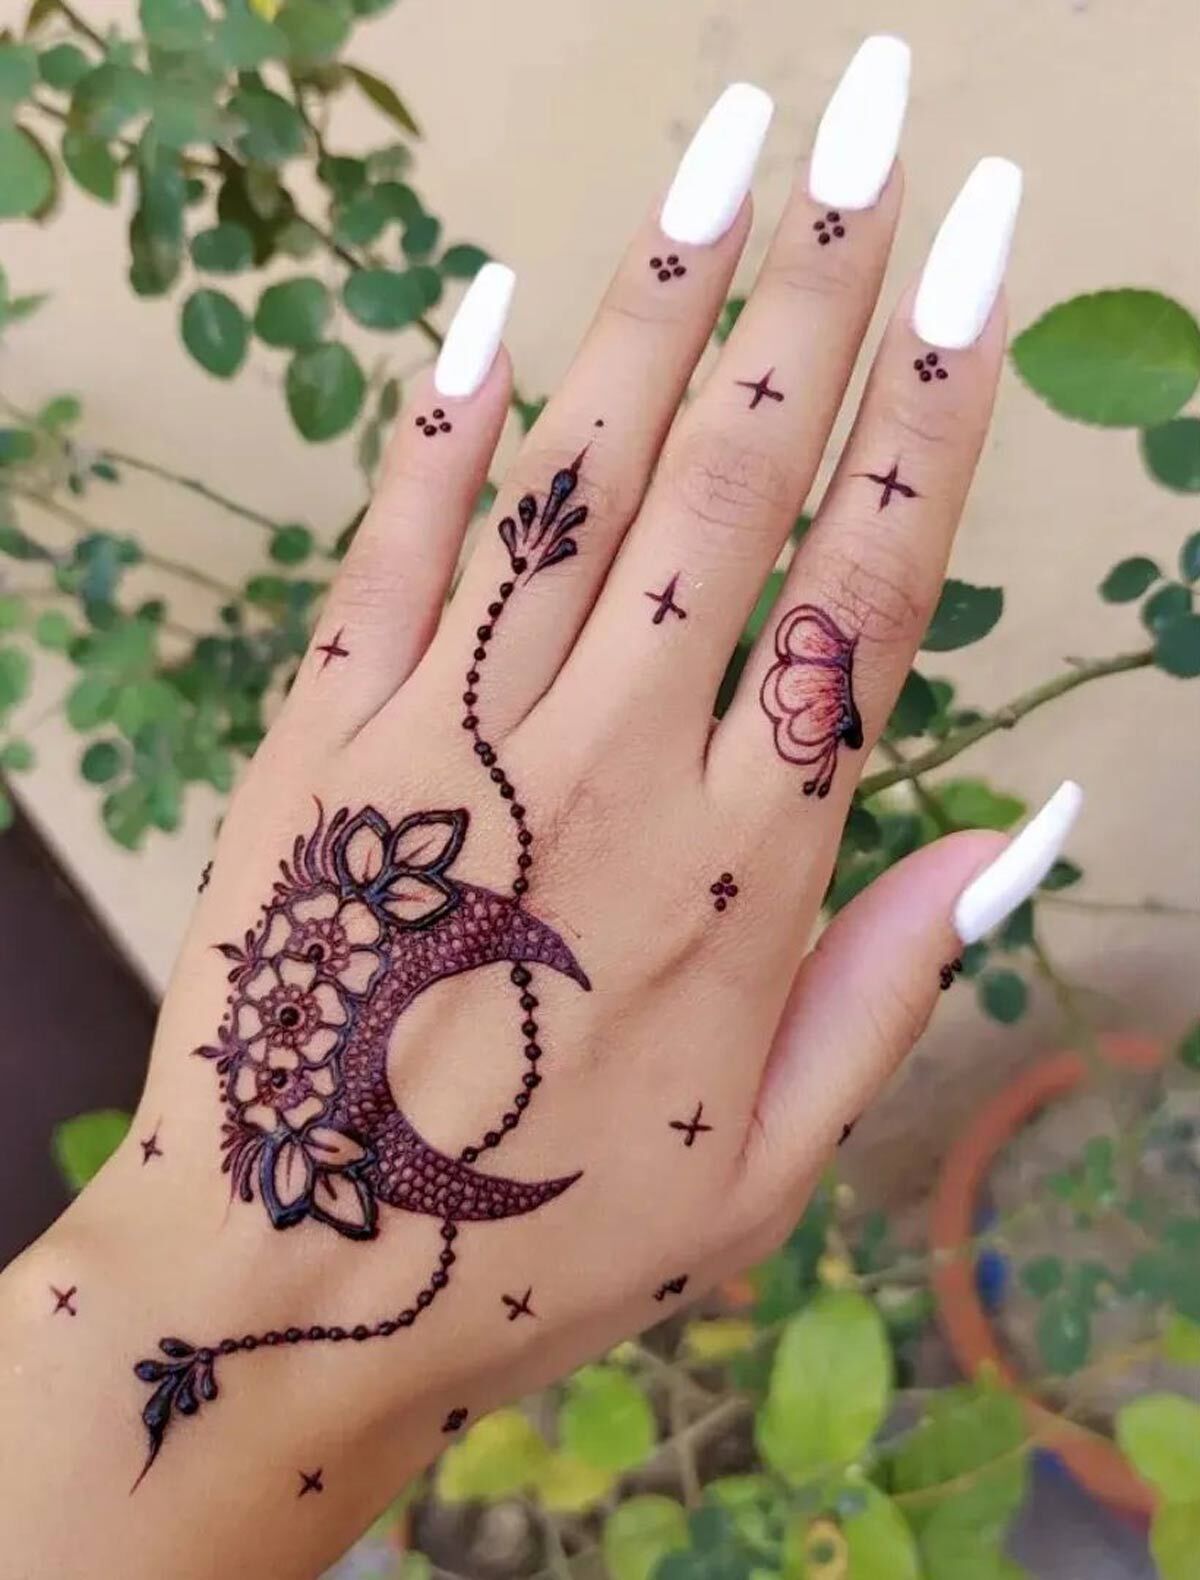 Tattoo mehndi Designs: हाथों पर लगाएं टैटू मेहंदी डिजाइन, हर कोई देखकर  करेगा तारीफ – newse7live.com